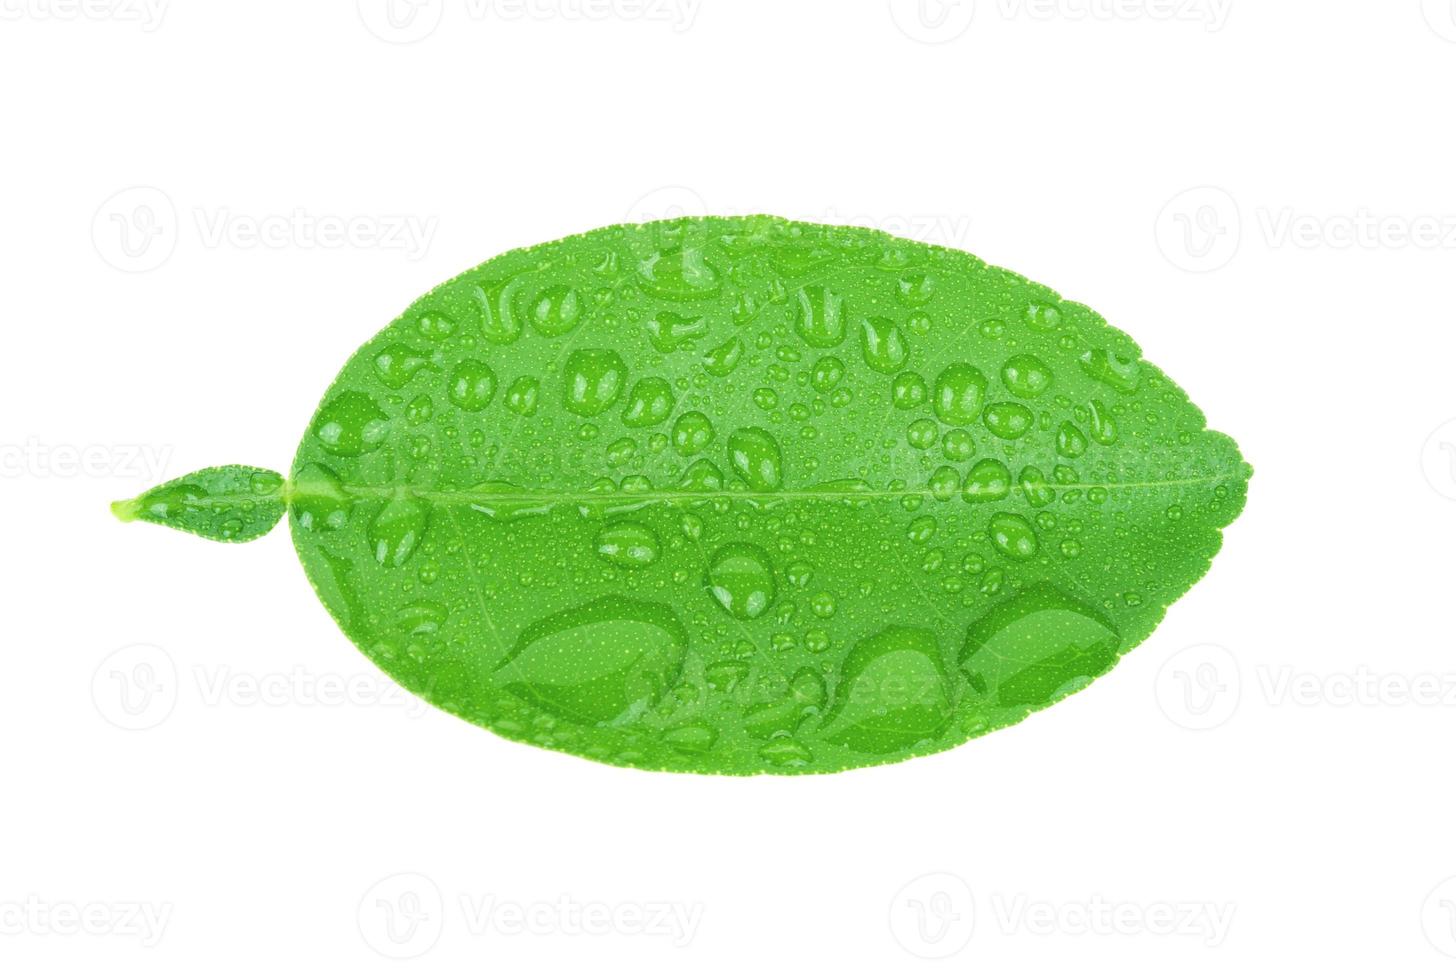 limeblad med droppar vatten isolerad på vit bakgrund foto